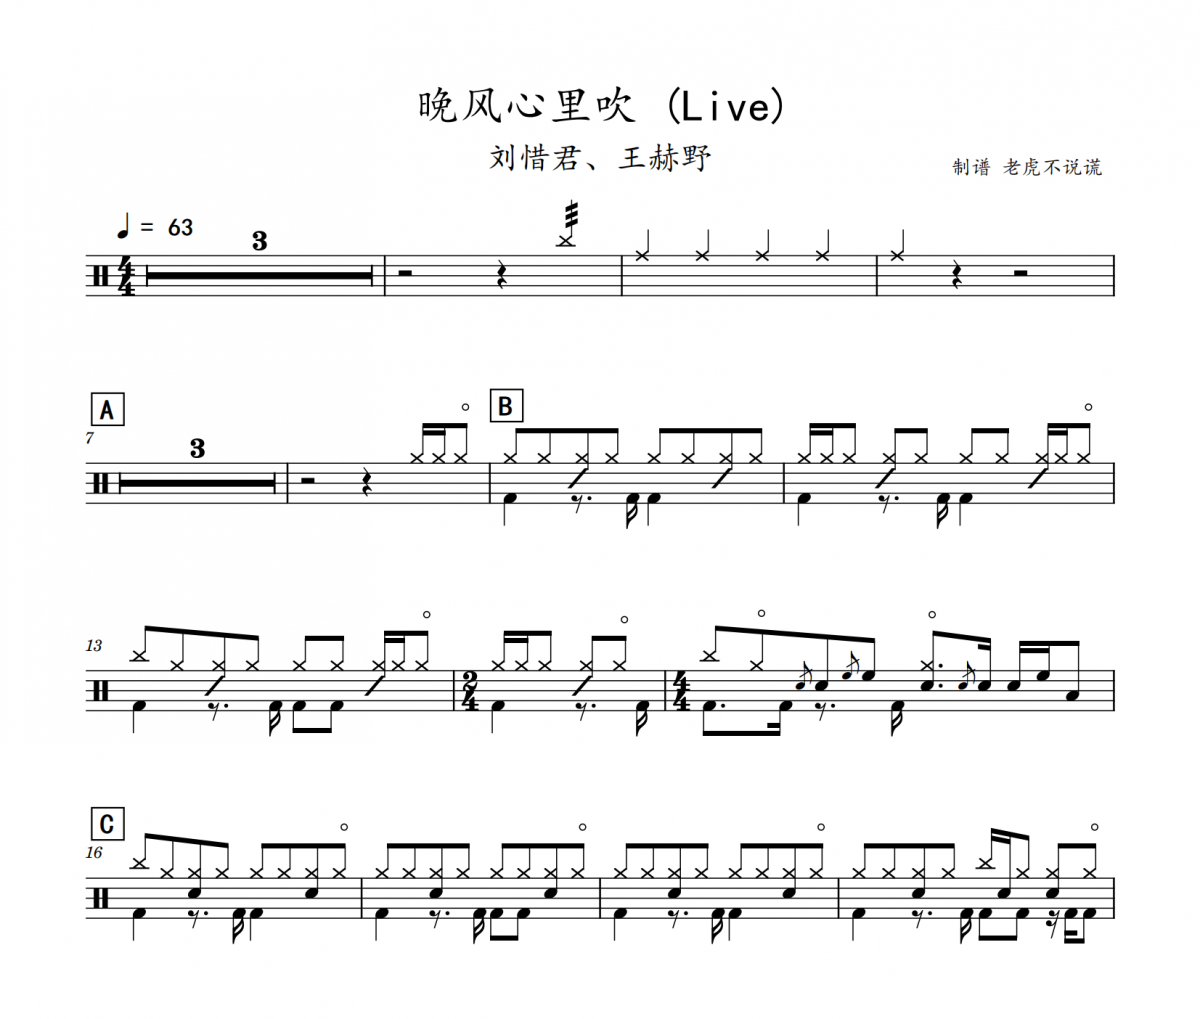 刘惜君、王赫野-晚风心里吹 (Live+节拍器)架子鼓谱爵士鼓曲谱